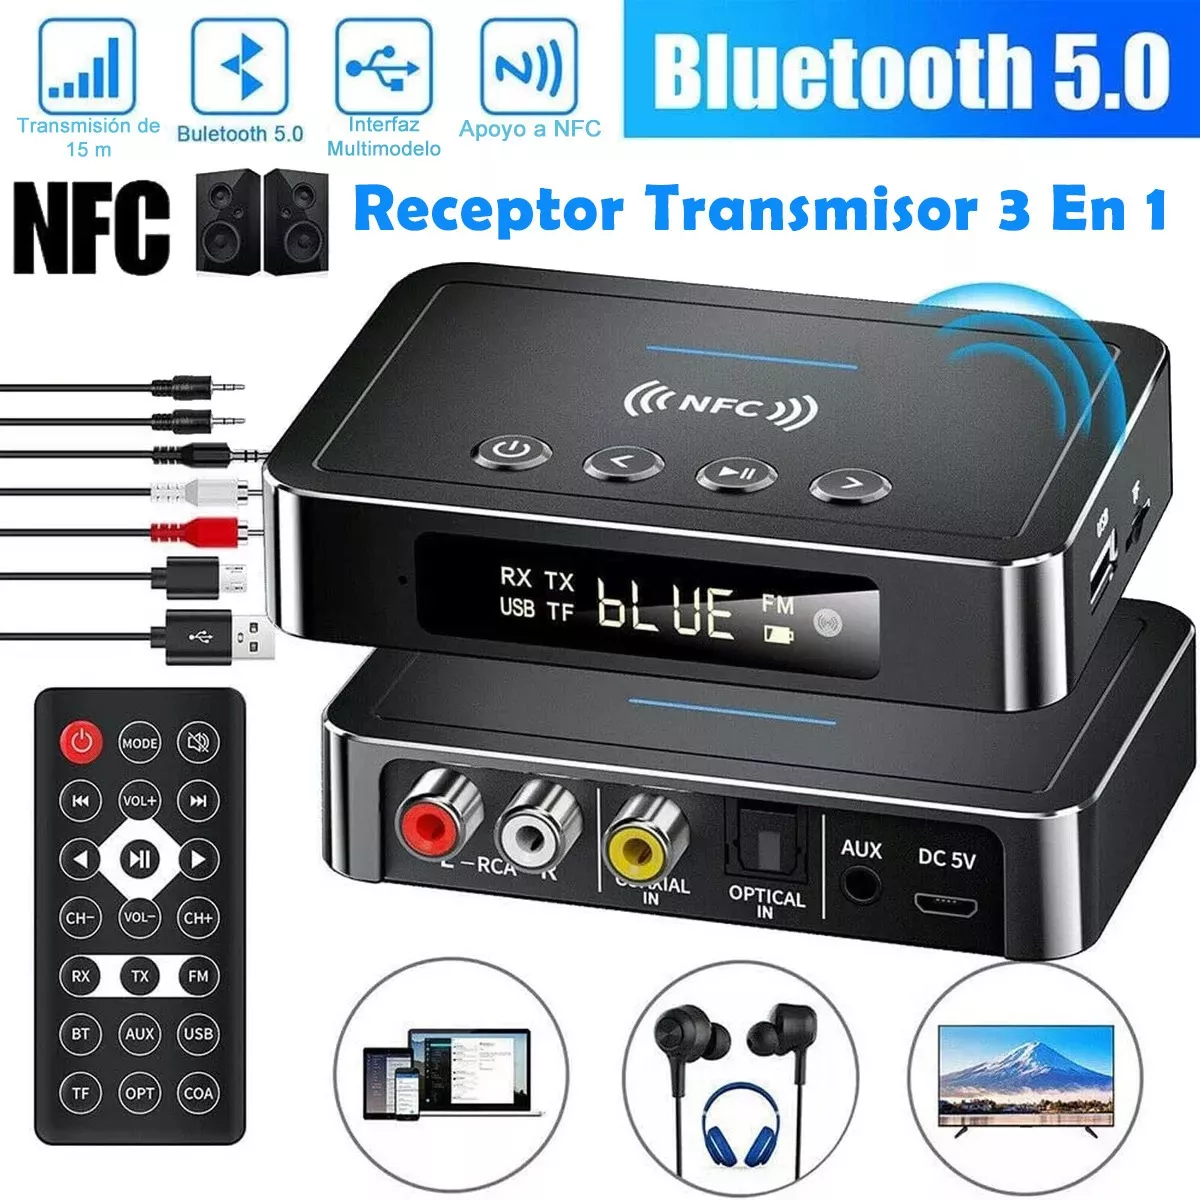 Compre Receptor Y Transmisor Nfc Bluetooth 5,0 3 En 1 y Receptor Bluetooth  Transmisor Bluetooth de China por 9.54 USD